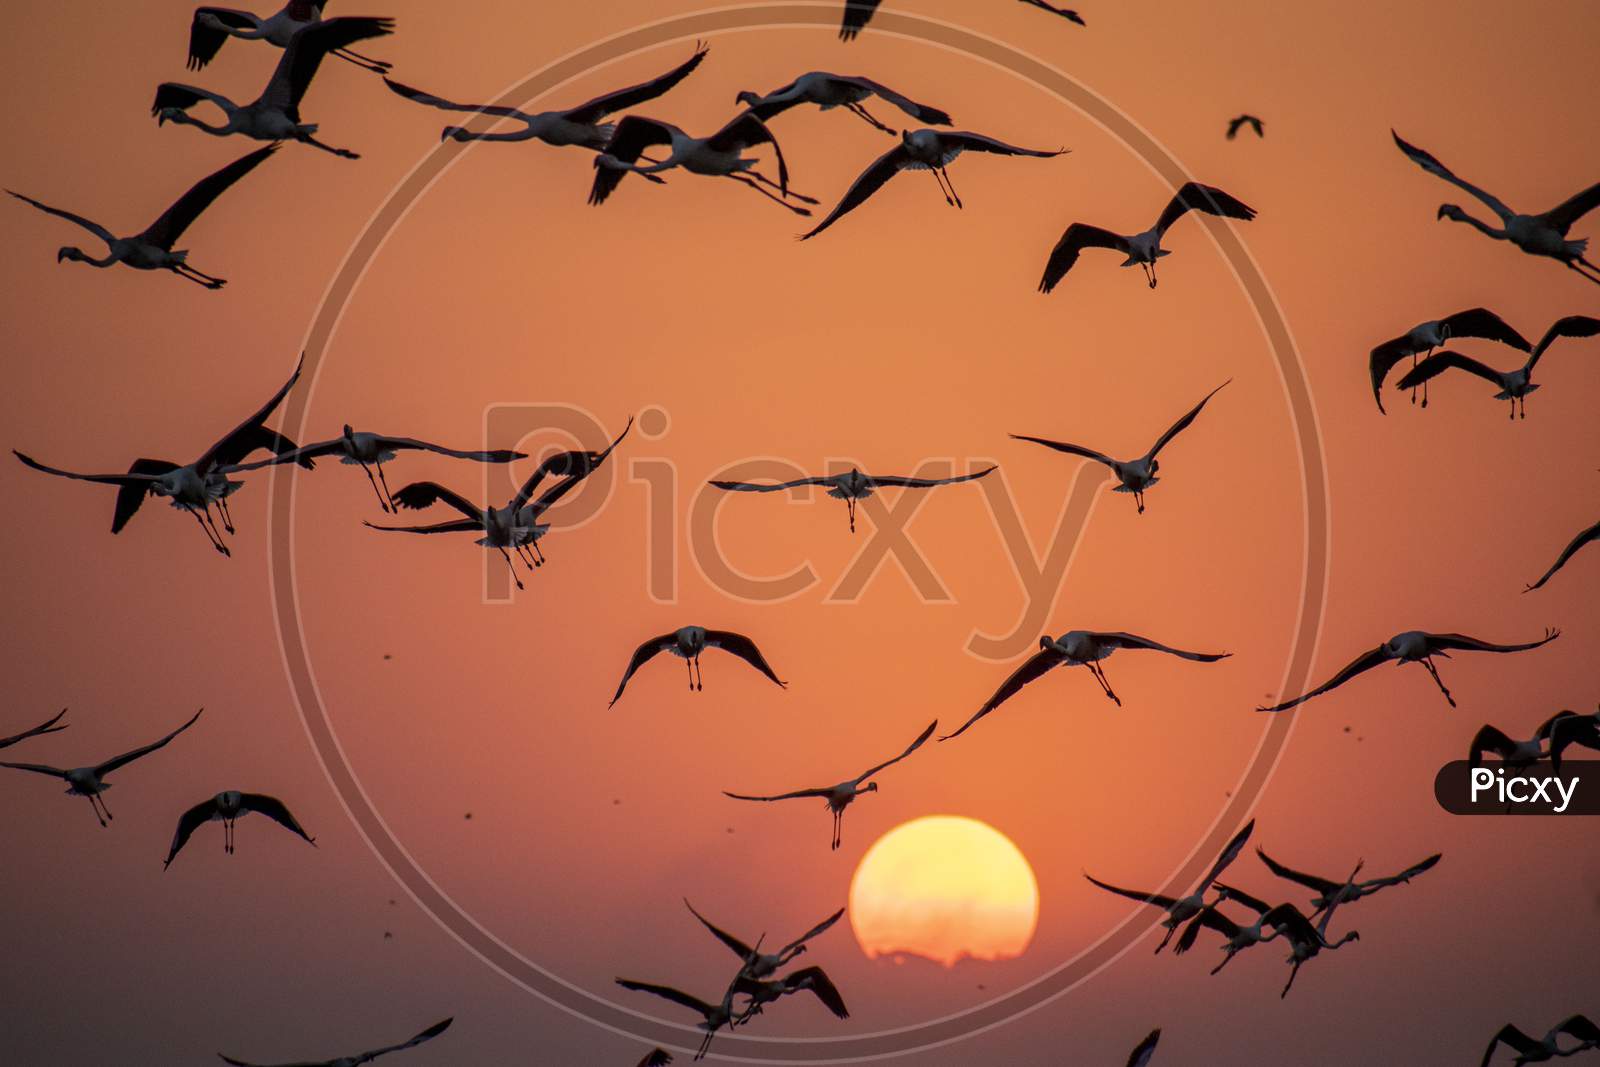 A Group Of Greater Flamingo (Phoenicopterus Roseus) Flying During The Beautiful Orange Sunset In Bhigwan,Maharashtra,India.